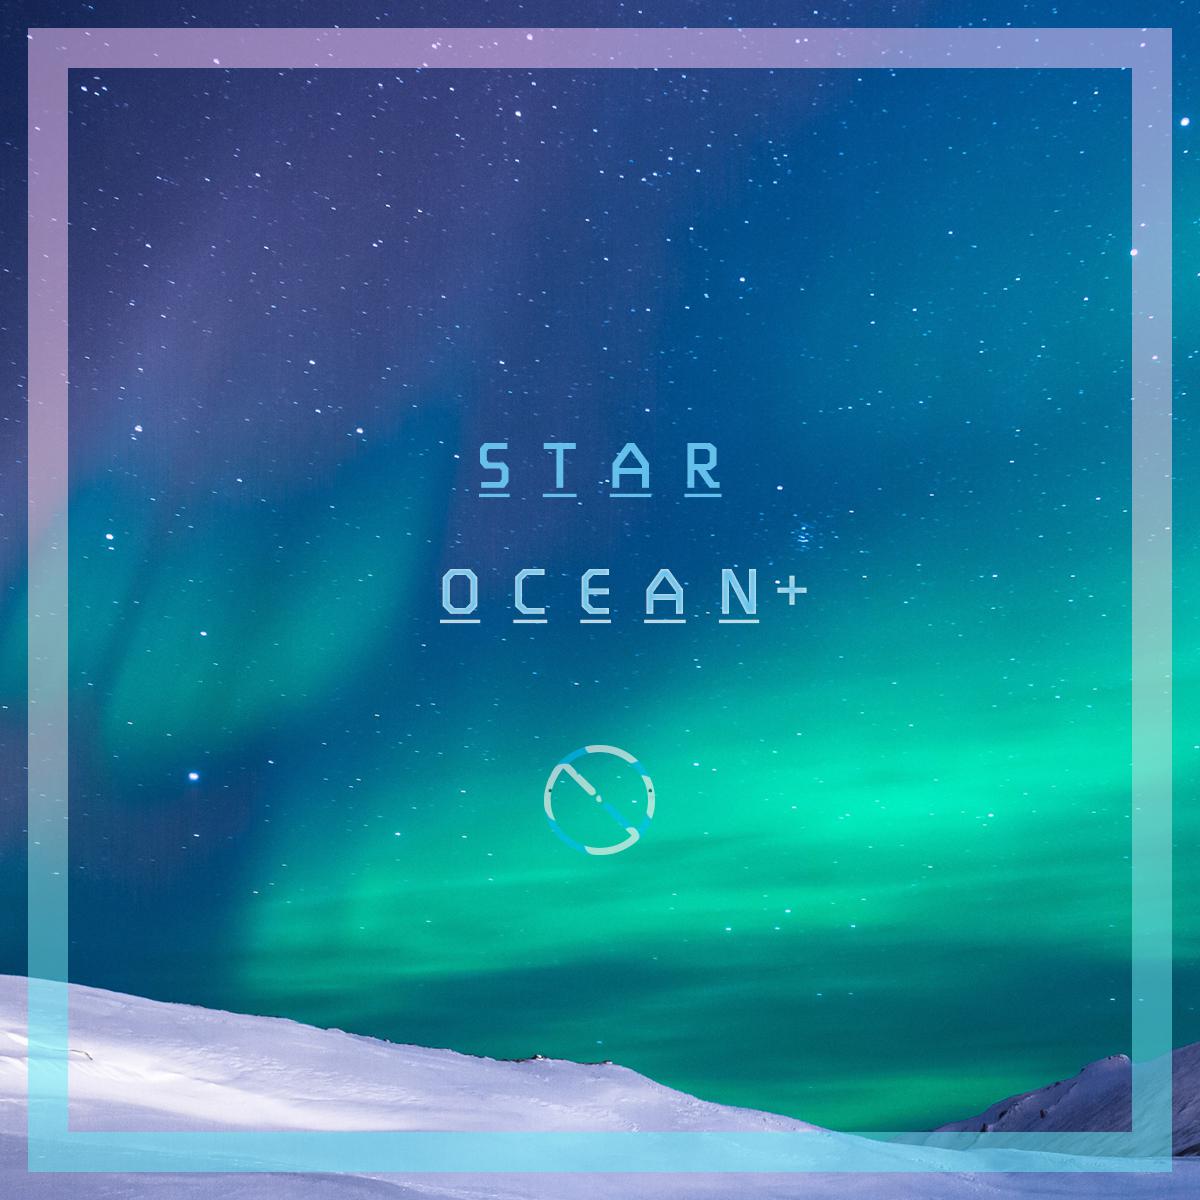 STAR OCEAN +